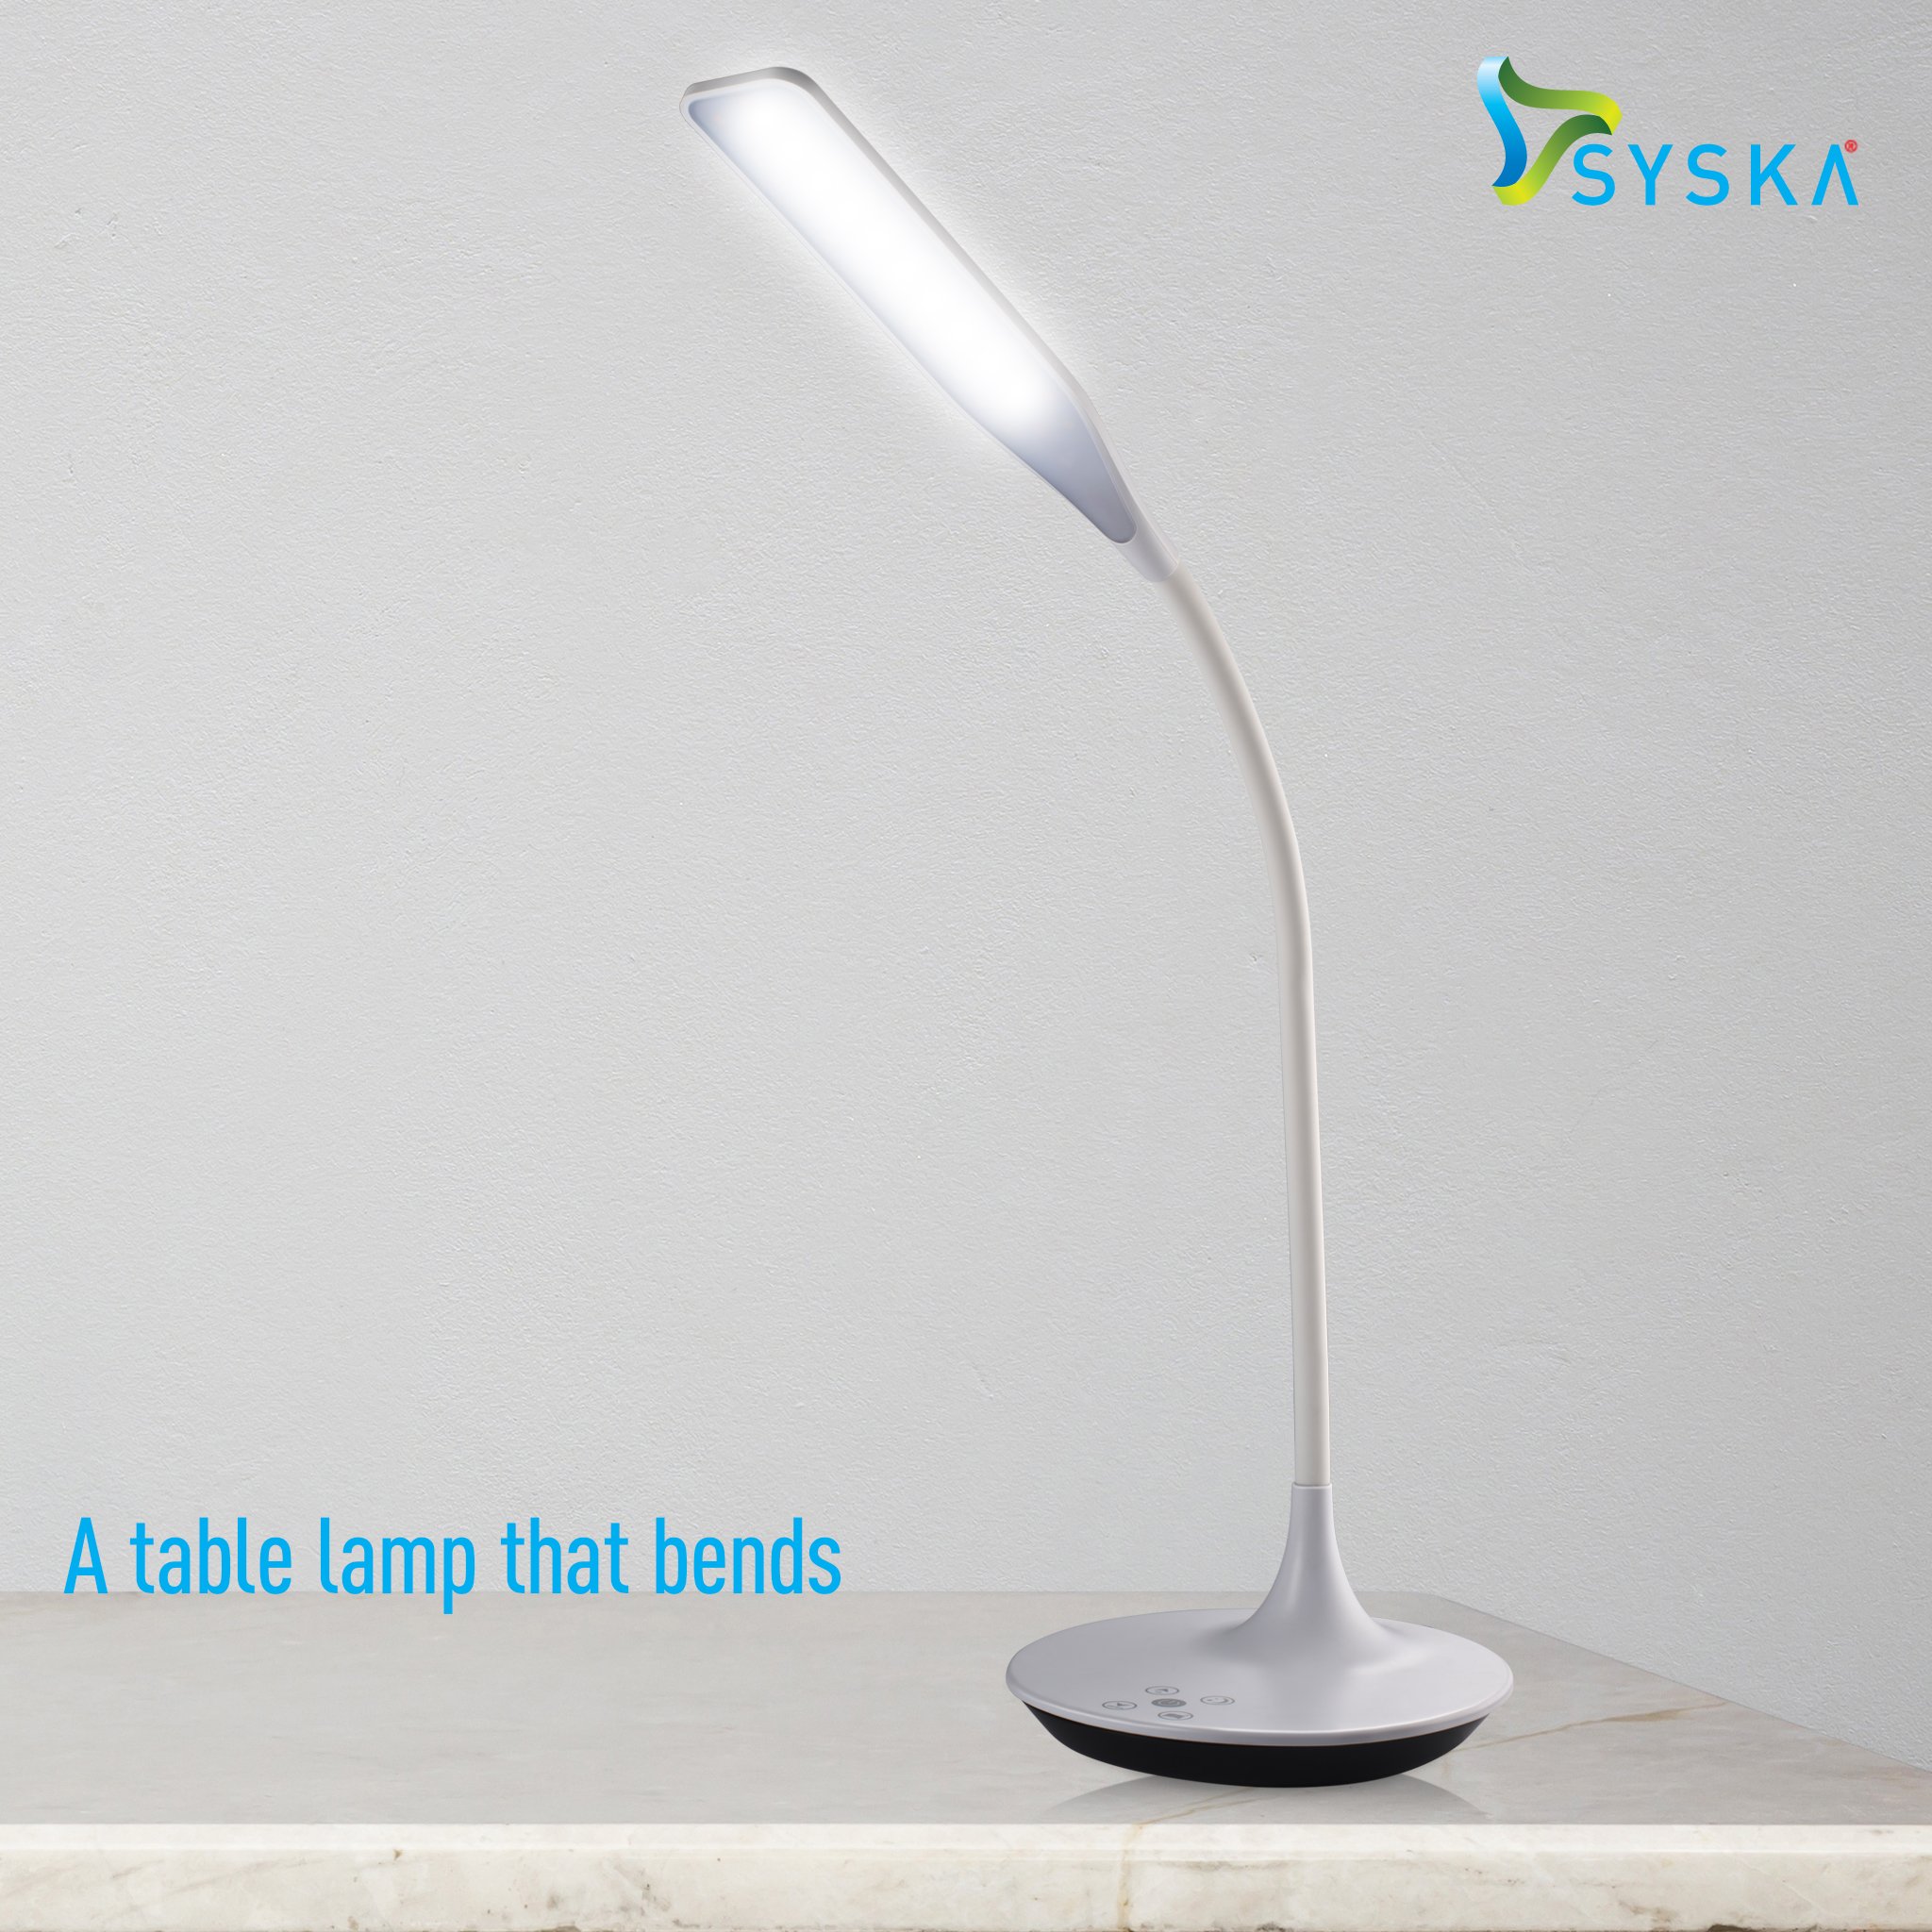 syska table lamp